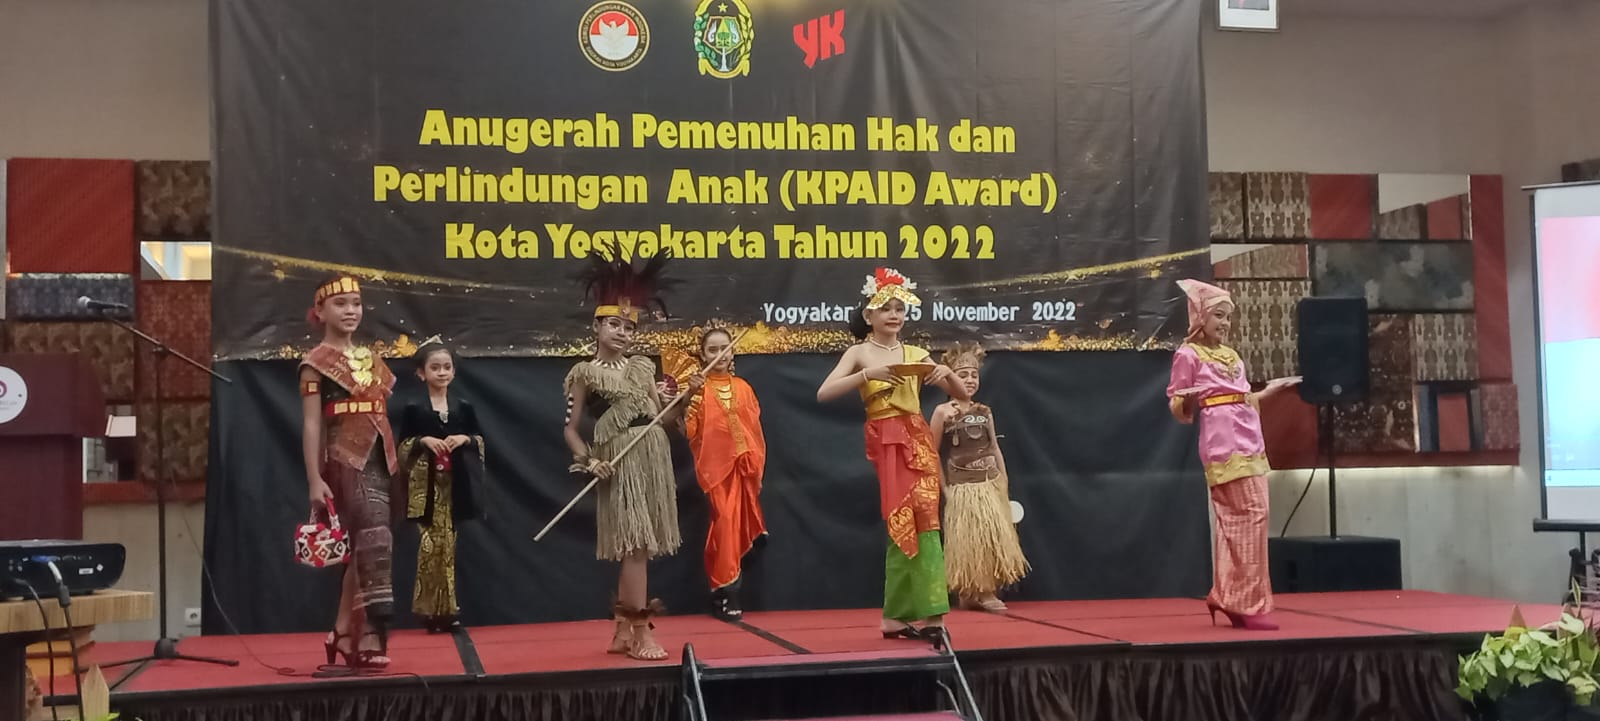 Pengadilan Negeri Yogyakarta Mendapatkan Penghargaan KPAID Award Kota Yogyakarta Tahun 2022